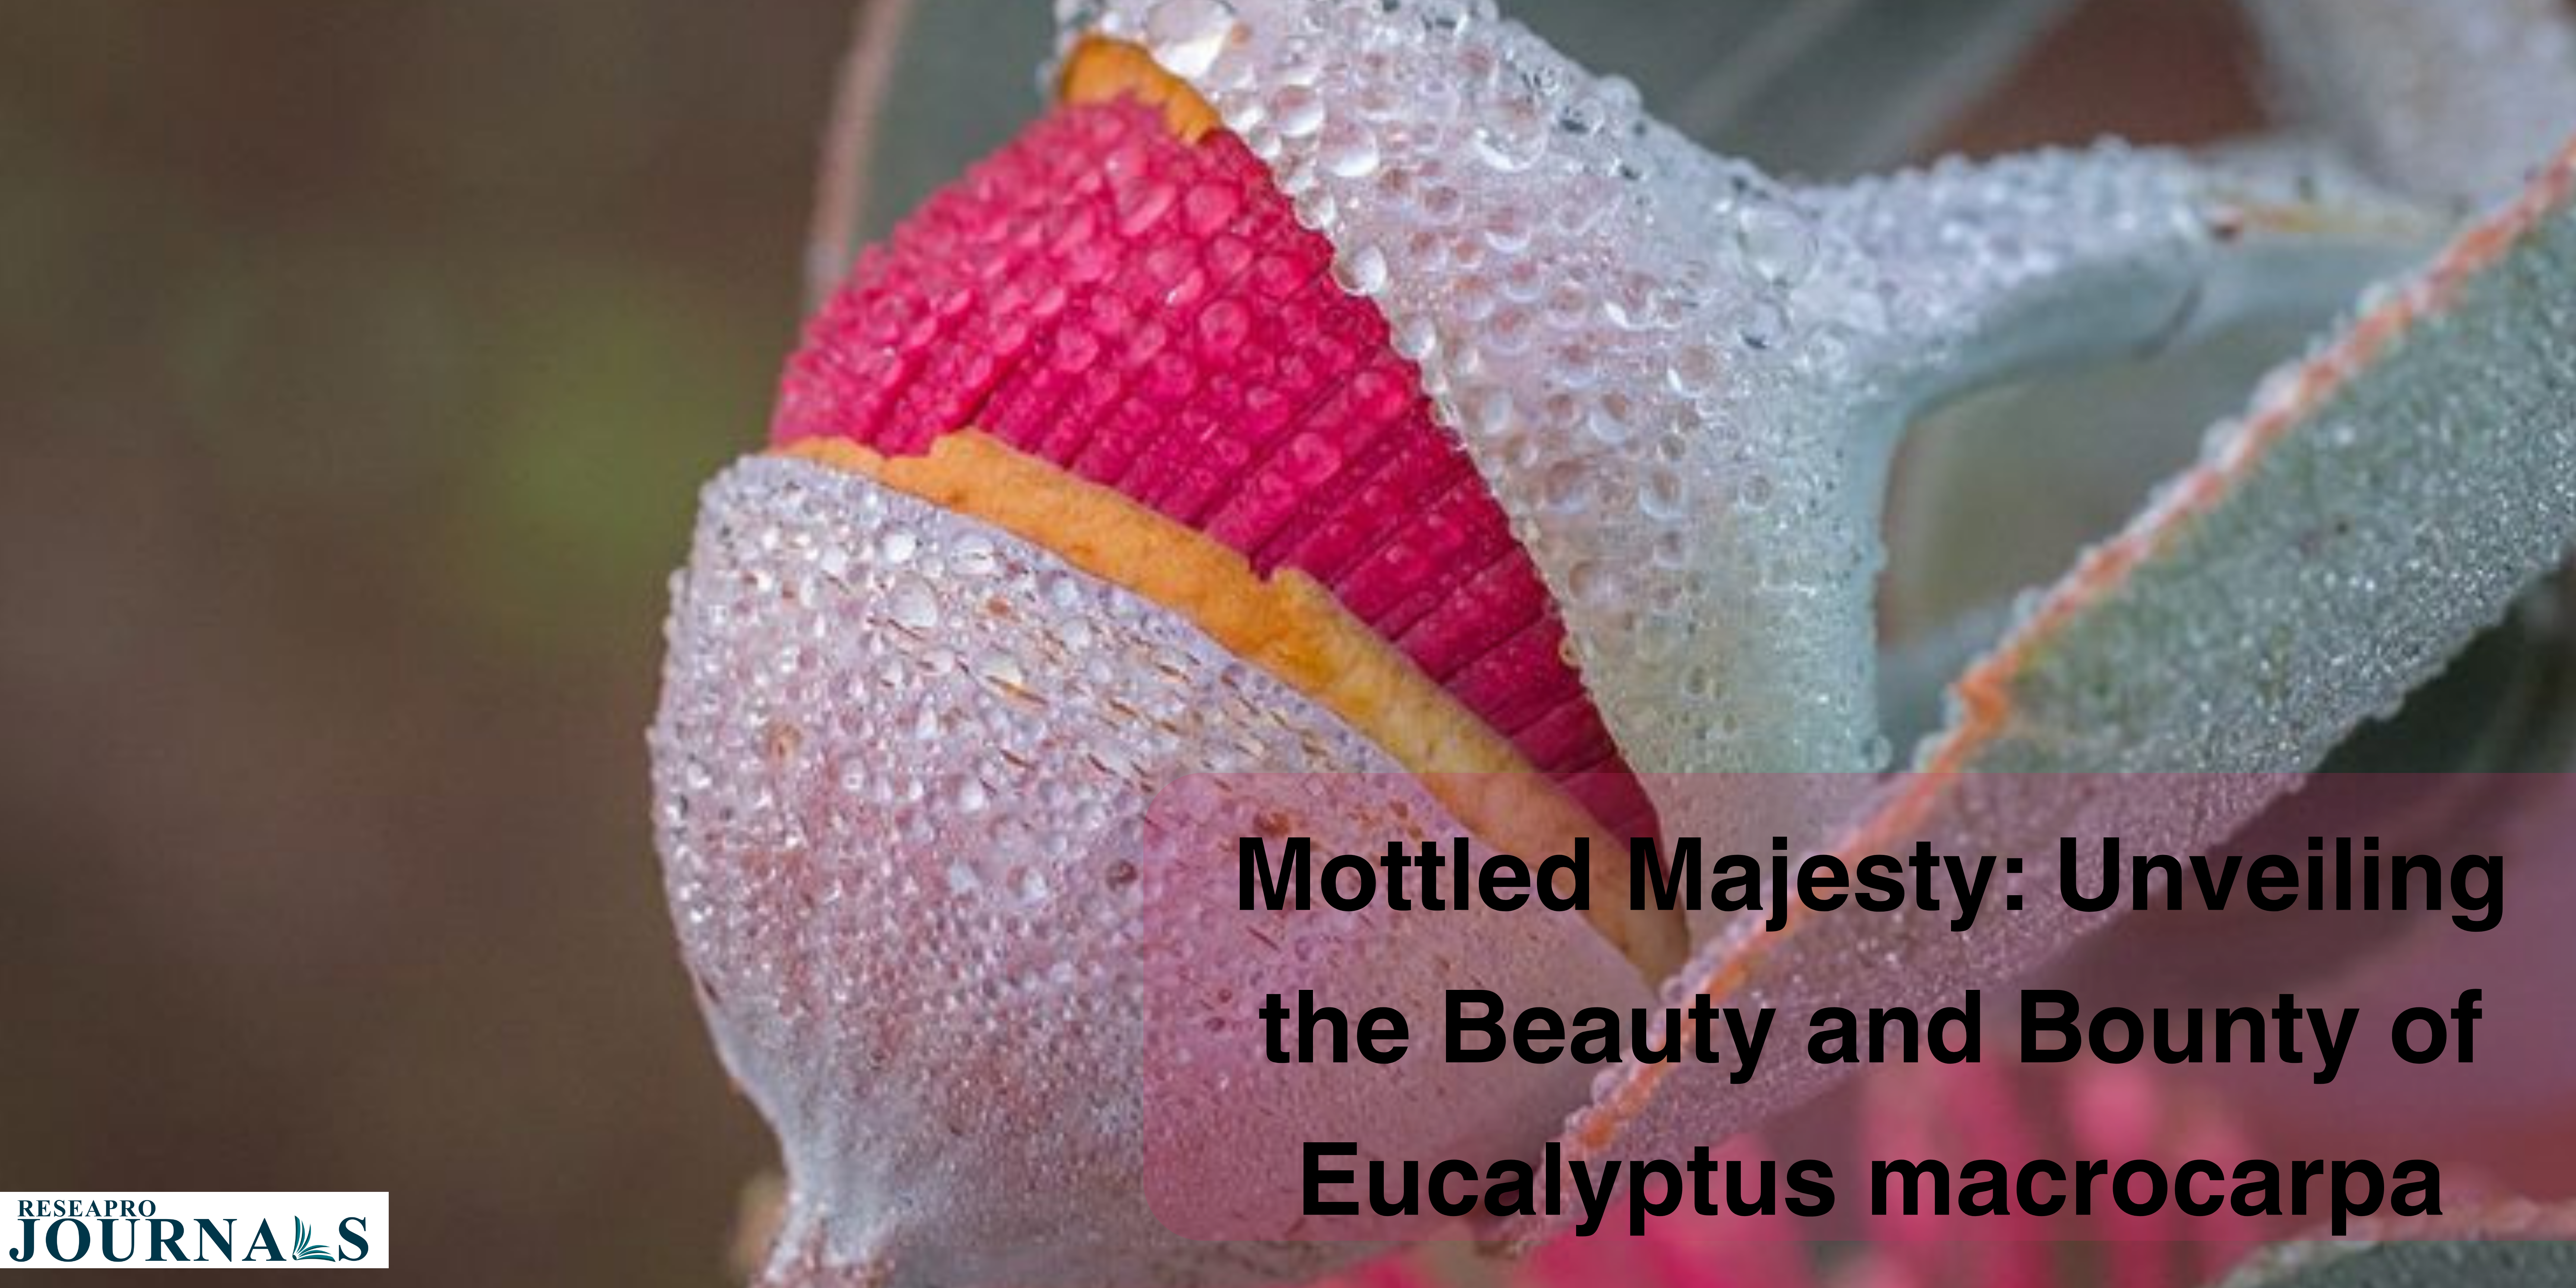 “Eucalyptus macrocarpa: Nature’s masterpiece, Australia’s ecological cornerstone.”